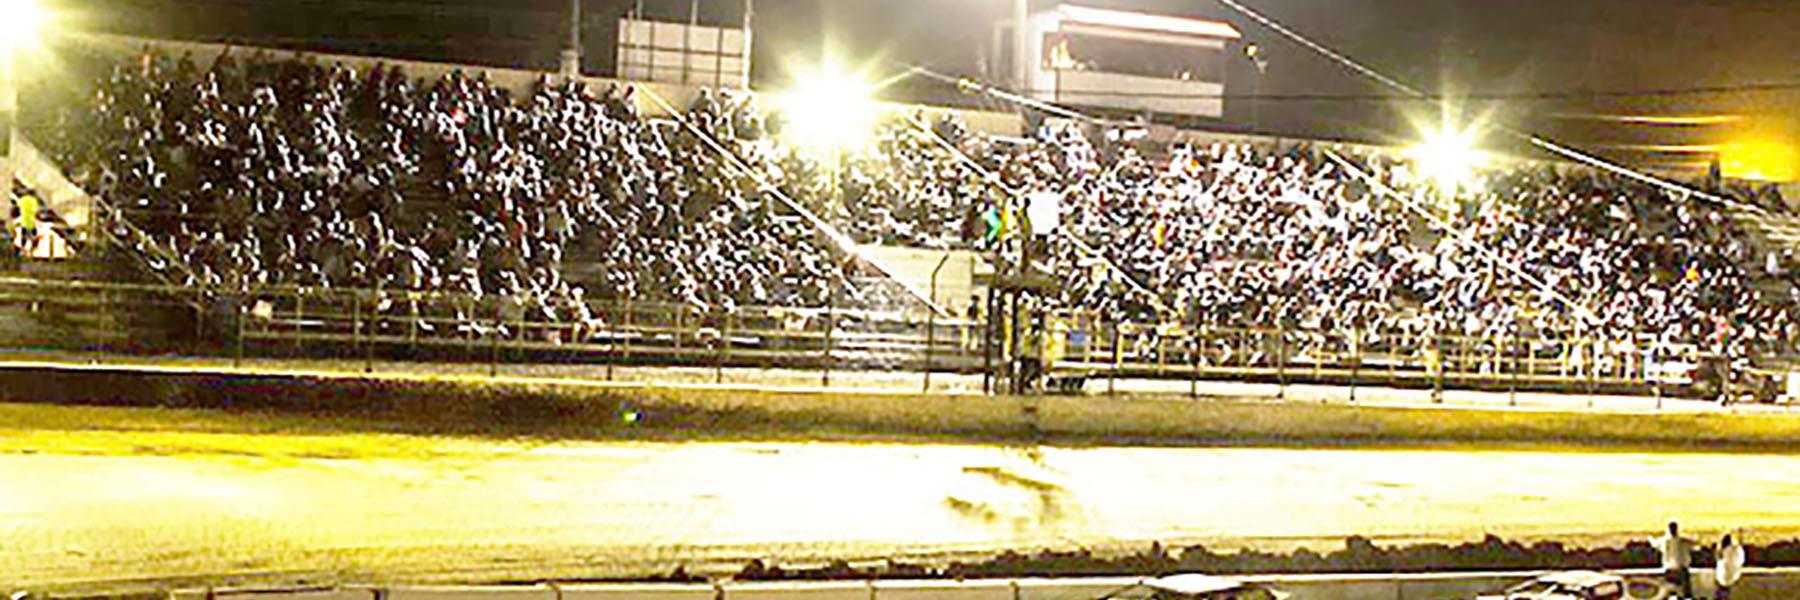 10/23/2021 - Tri-State Speedway